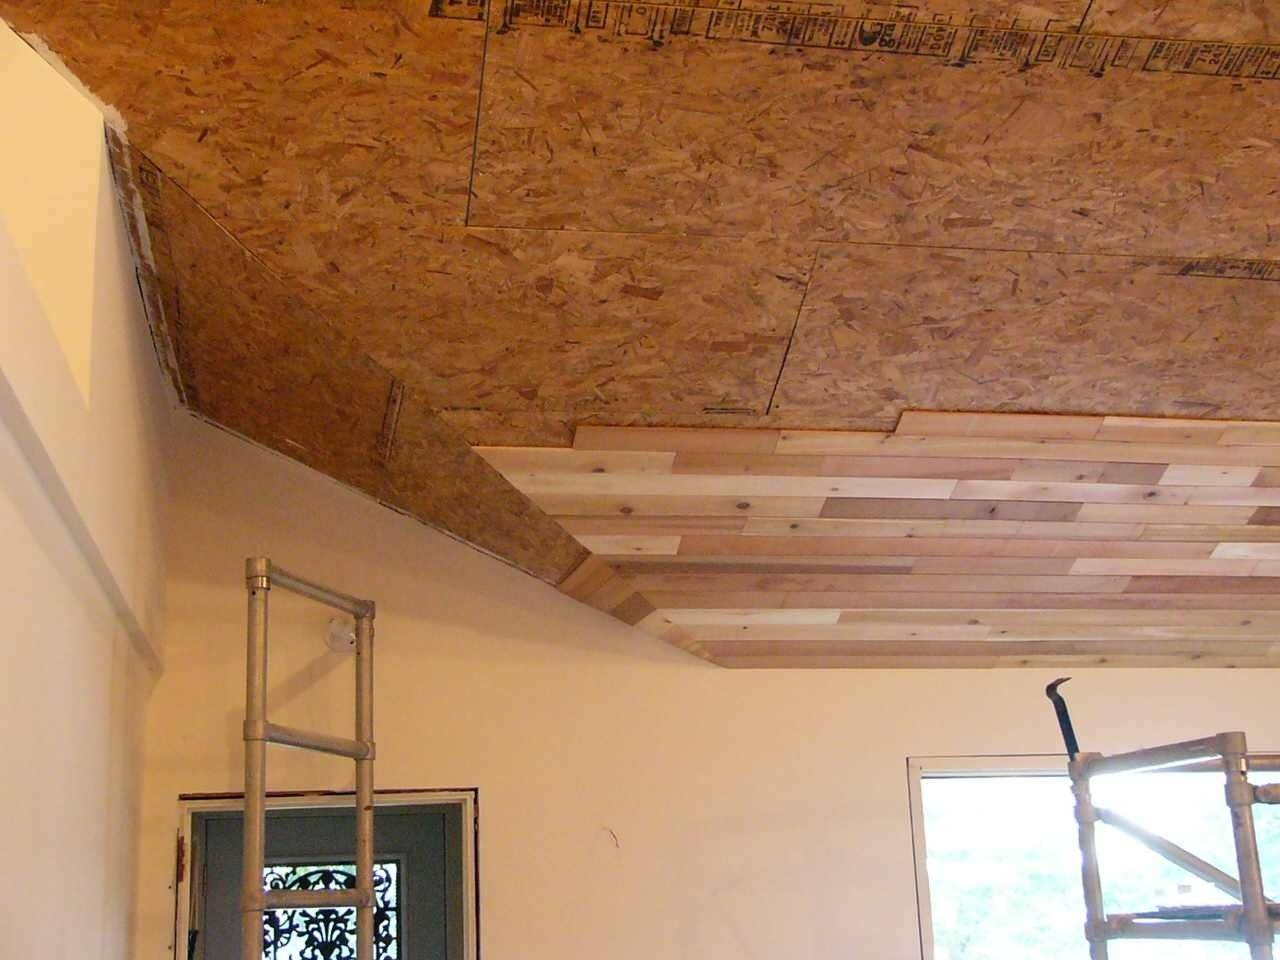 Как сделать потолок в частном доме